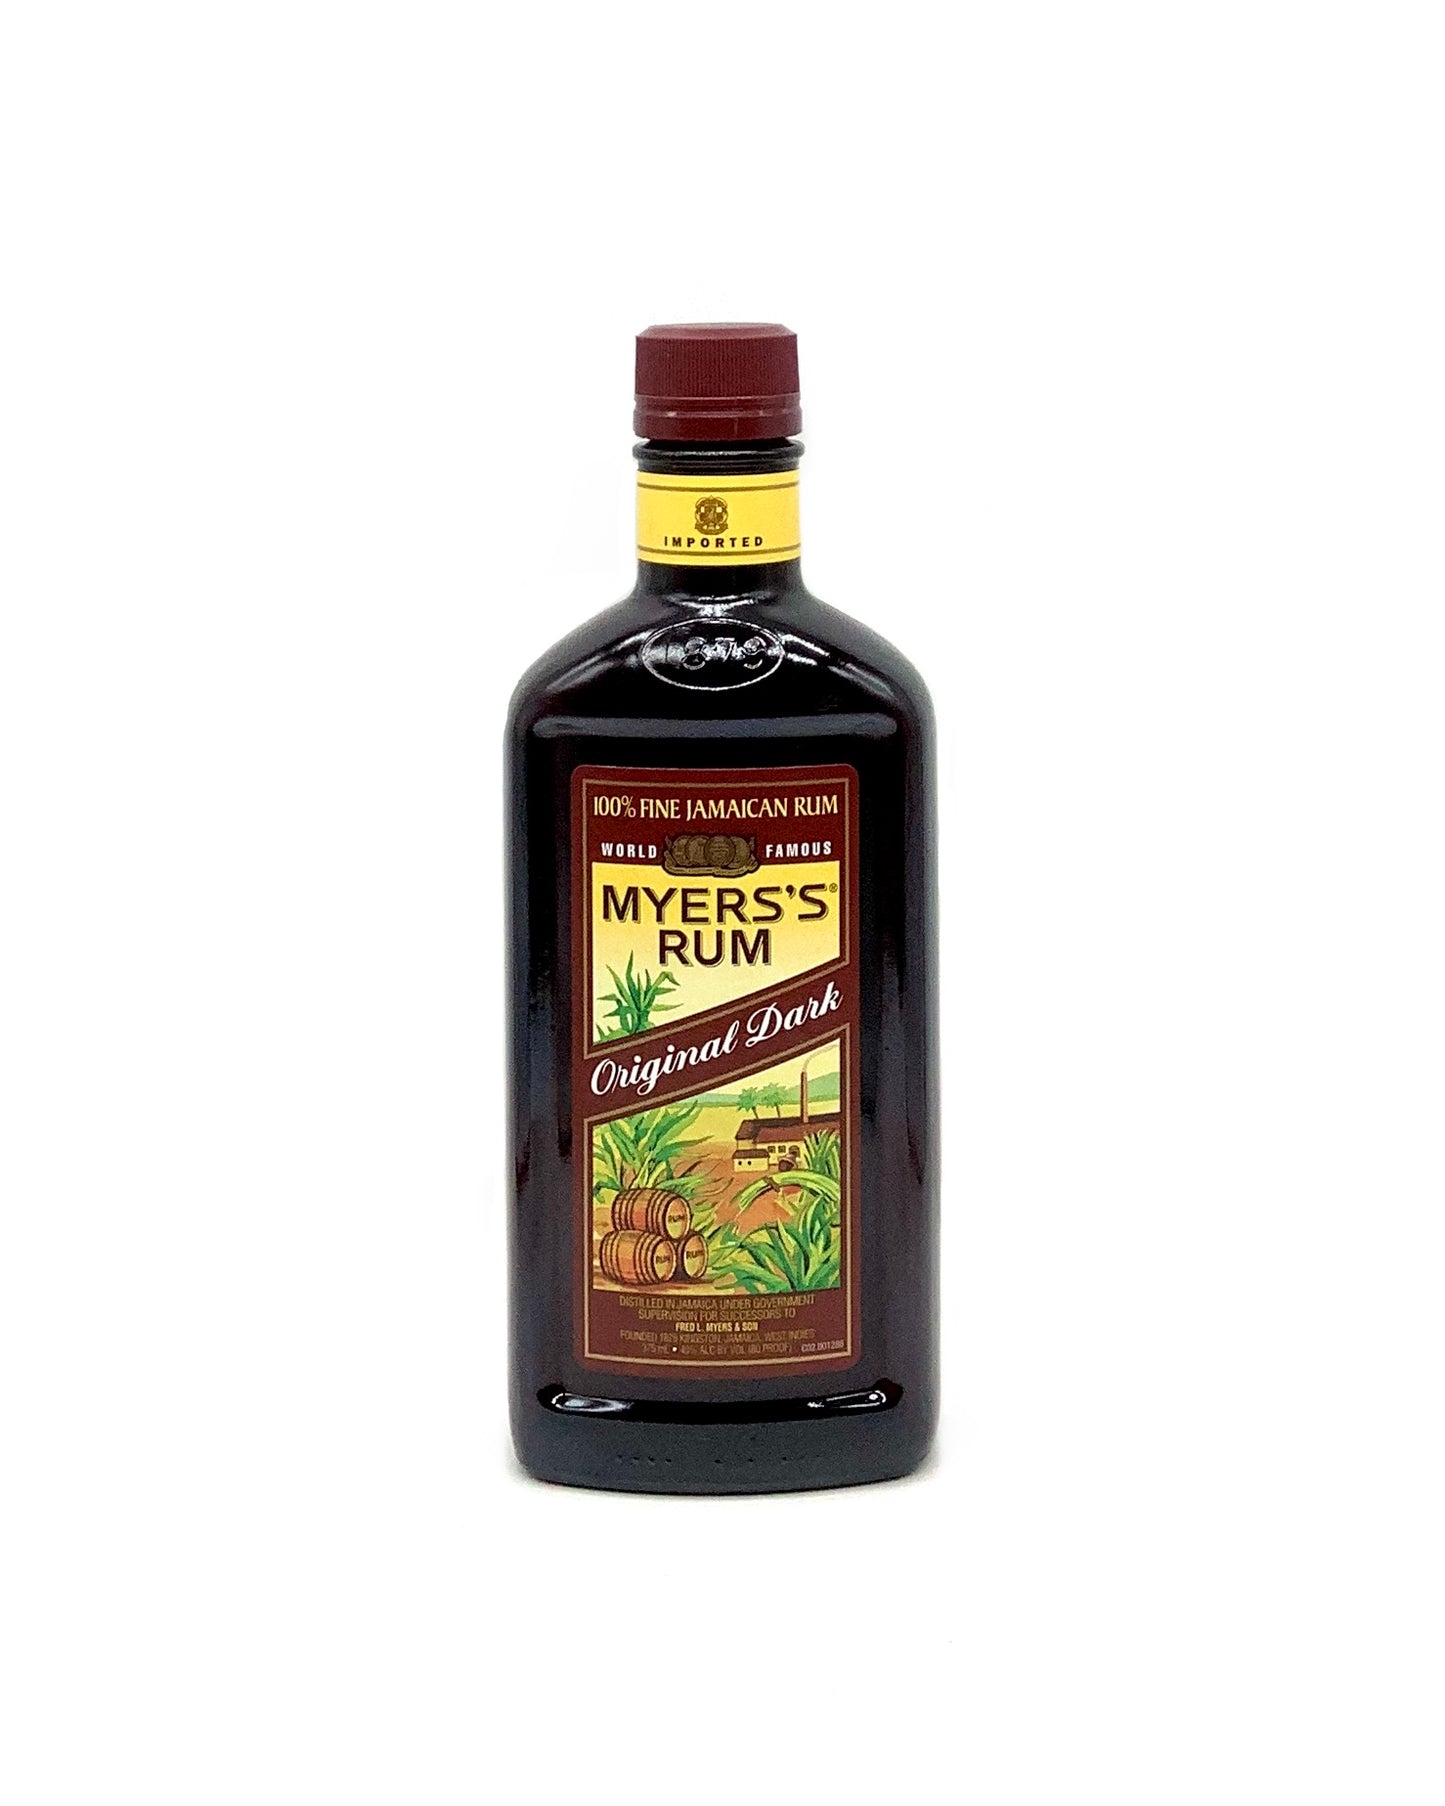 Myers's Rum Original Dark 375ml